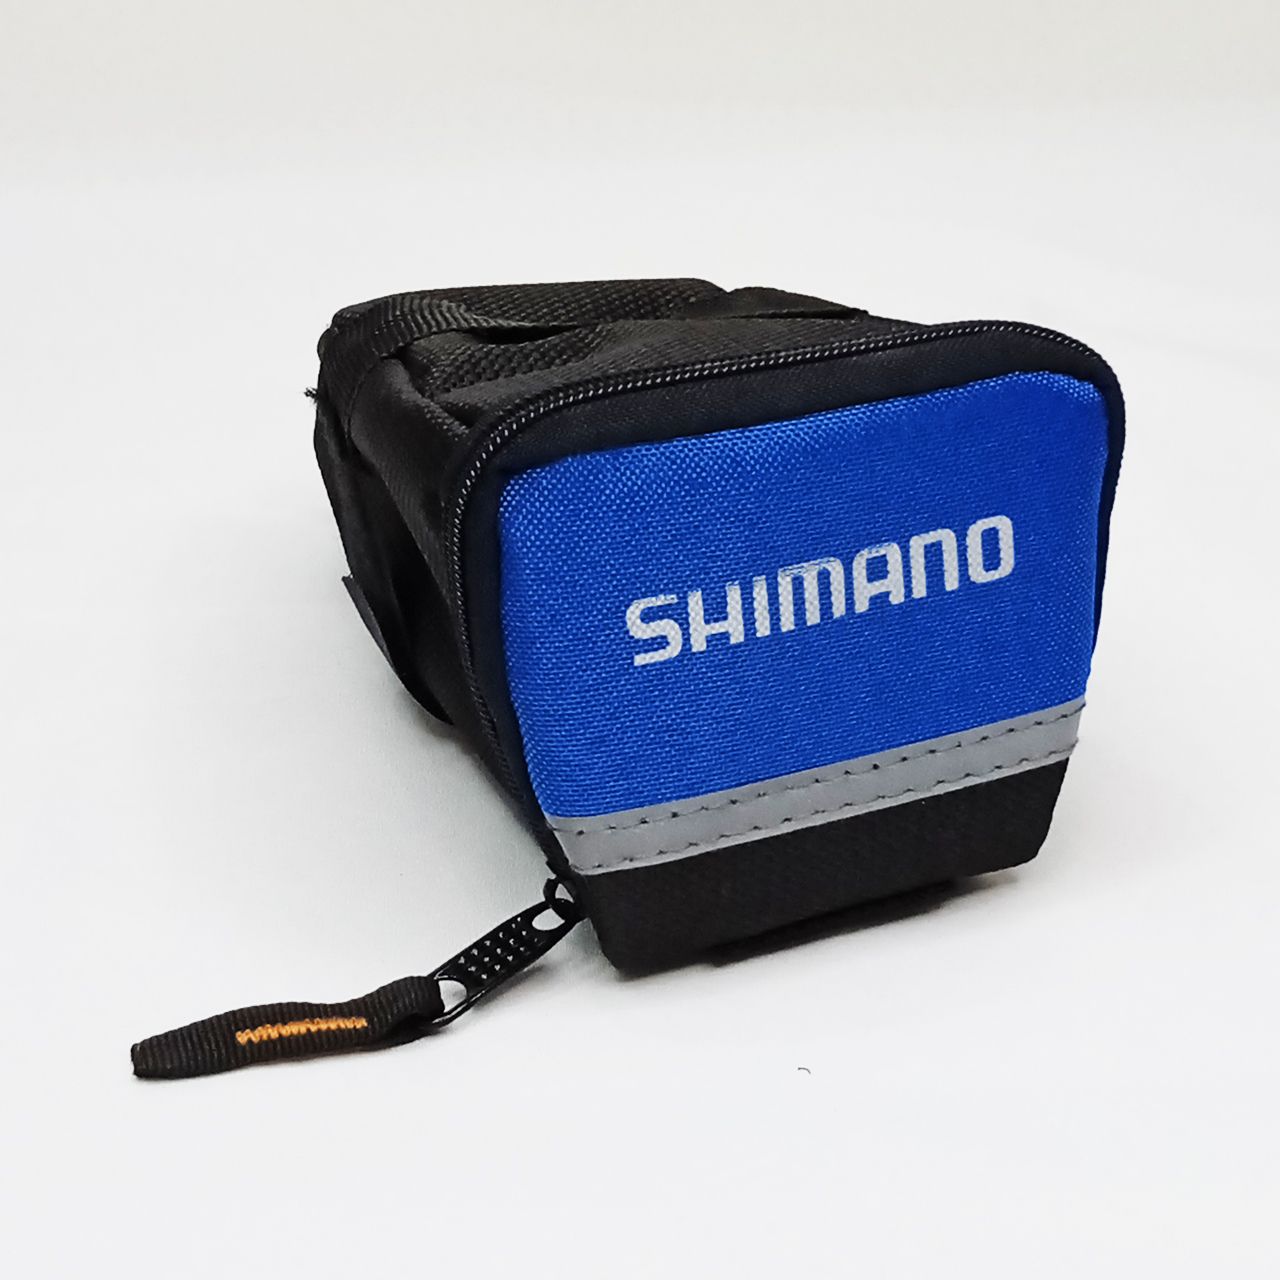 کیف زیر زین دوچرخه شیمانو مدل 01 -  - 4